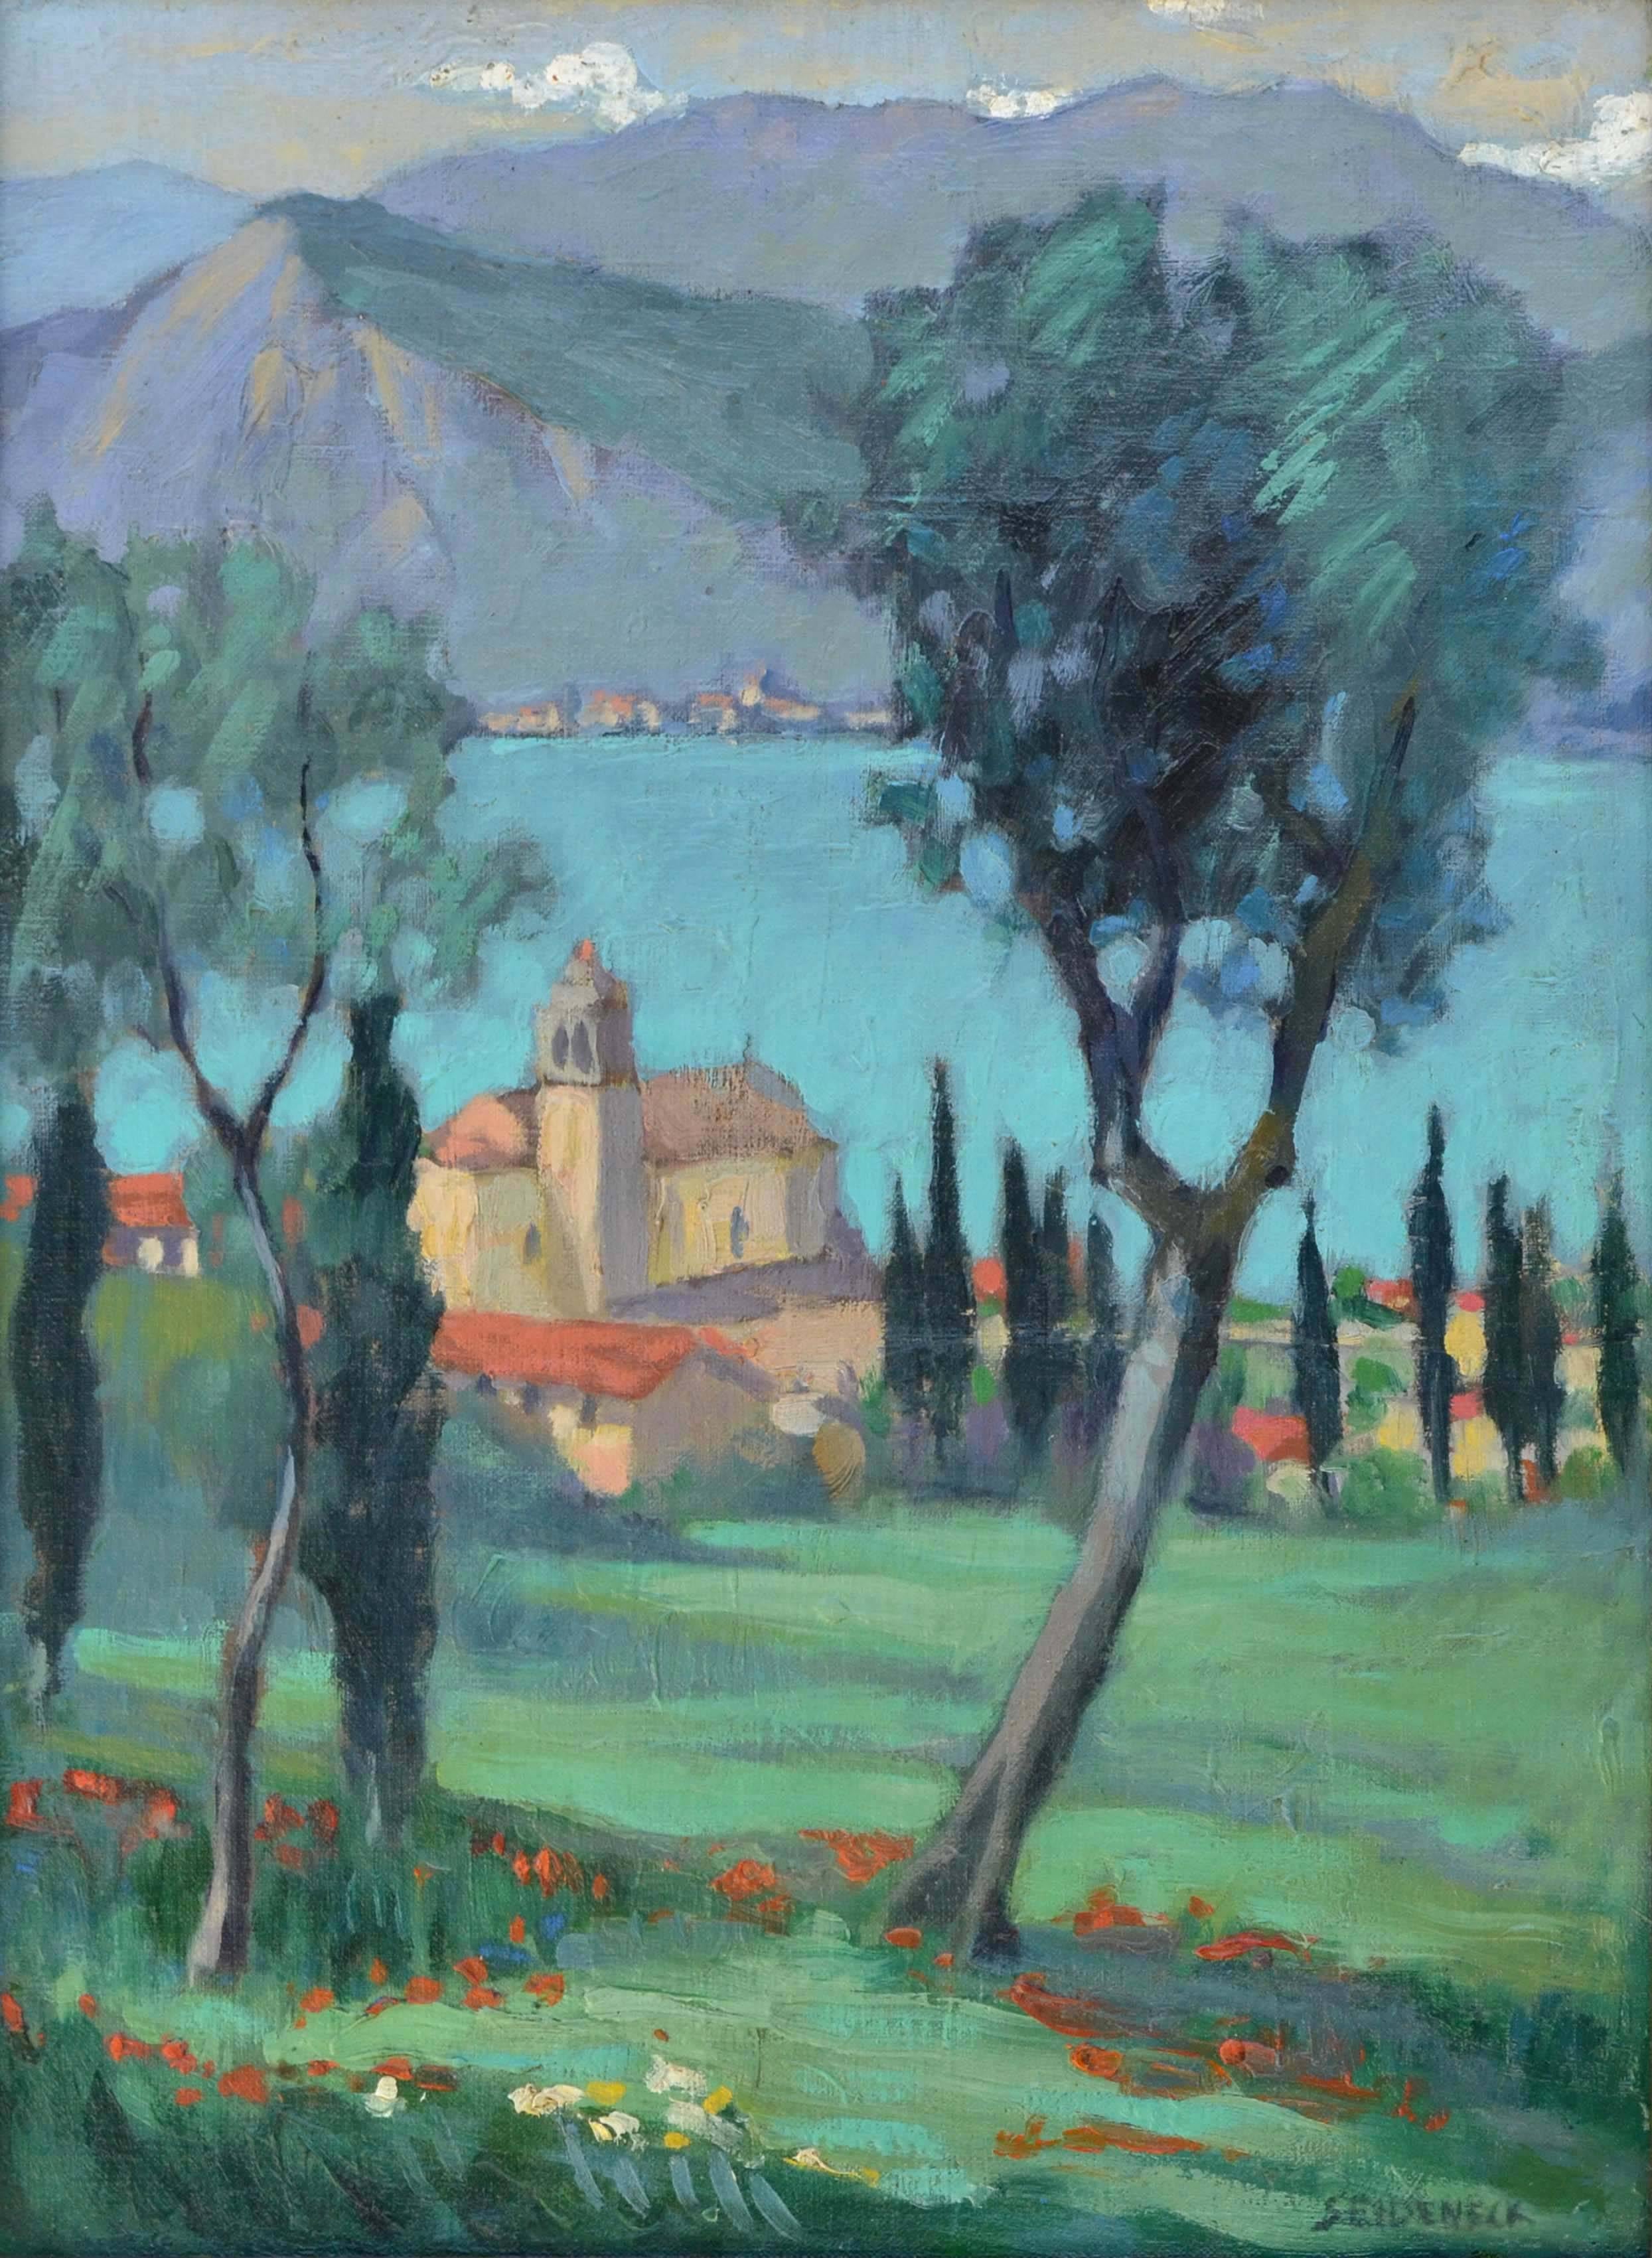 Lake Garda, Italy - Painting by George J. Seideneck